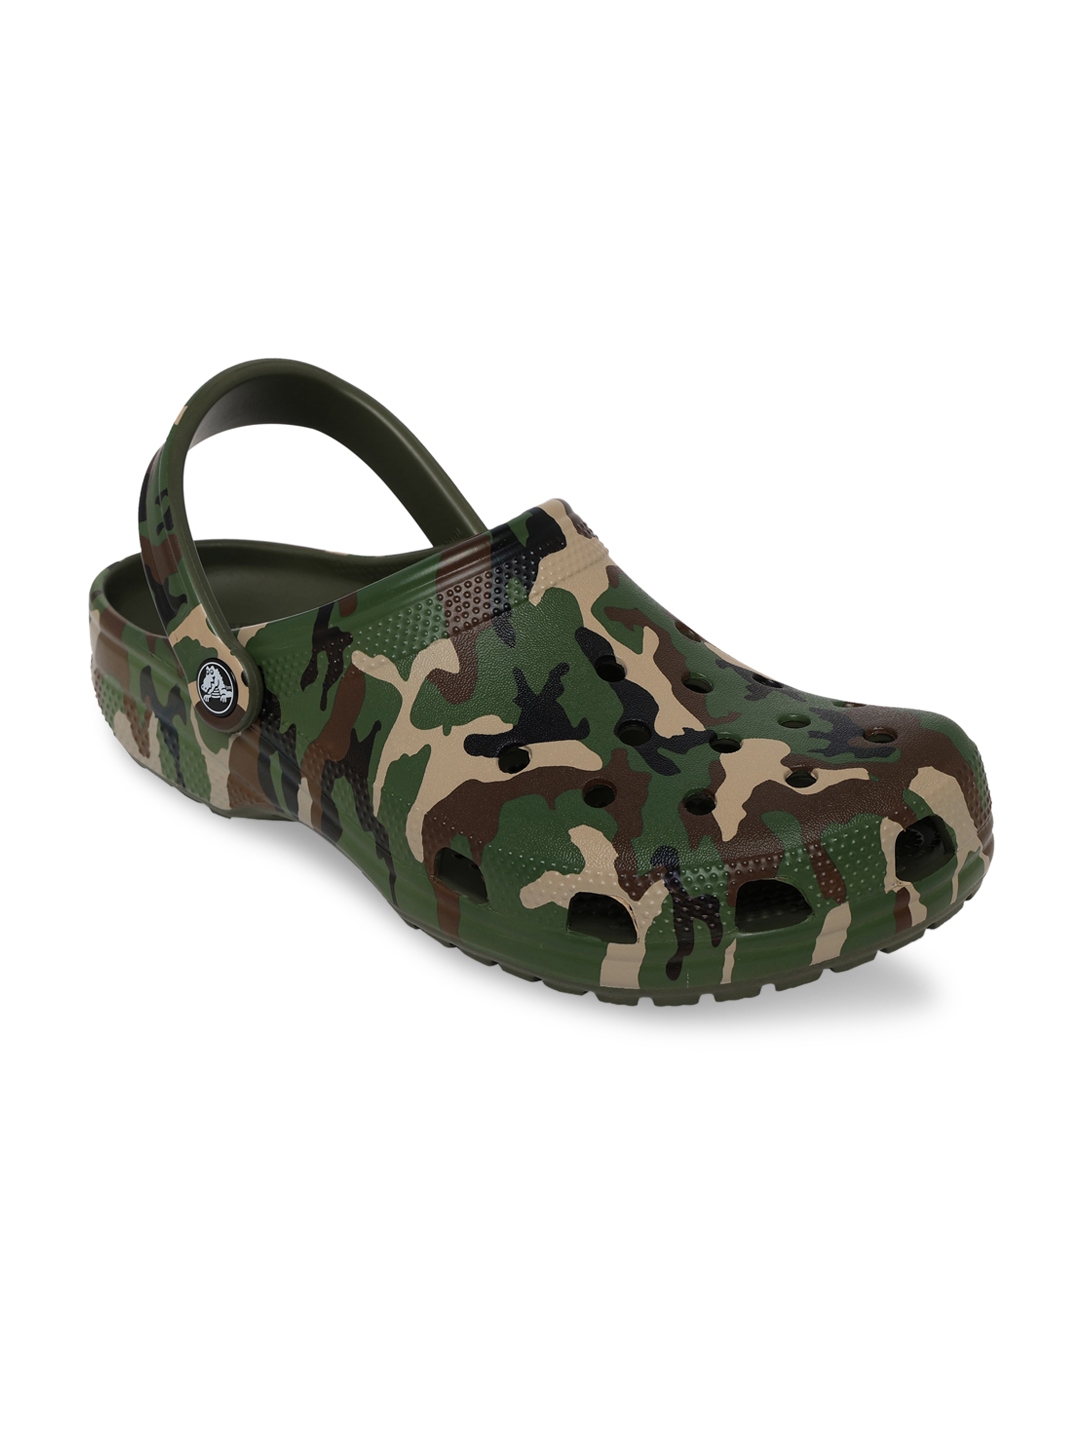 Buy Crocs Classic Men Olive Green Black Clogs - Sandals for Men ...